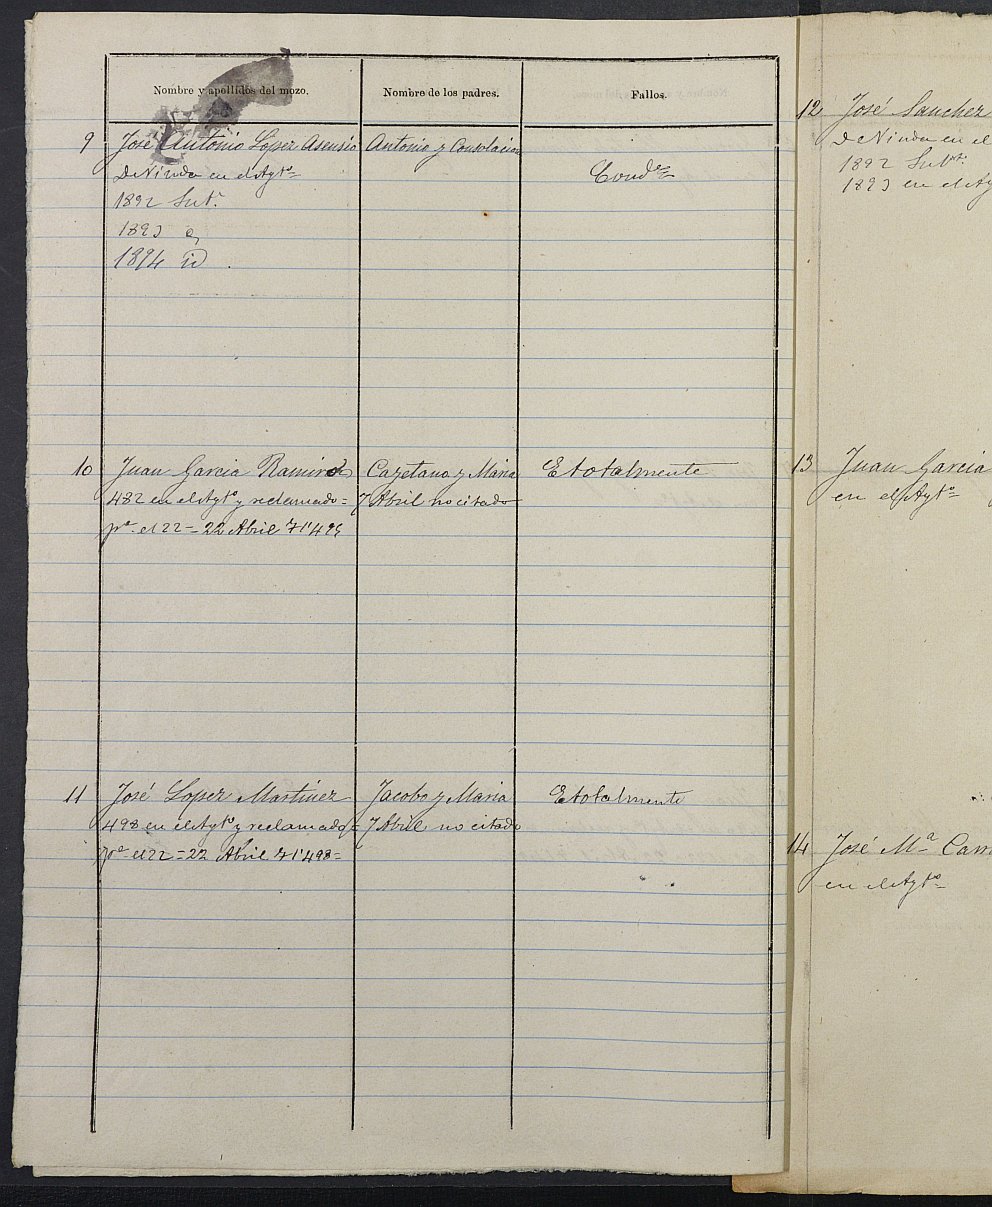 Relación de individuos declarados soldados e ingresados en Caja del Ayuntamiento de Lorquí de 1891.